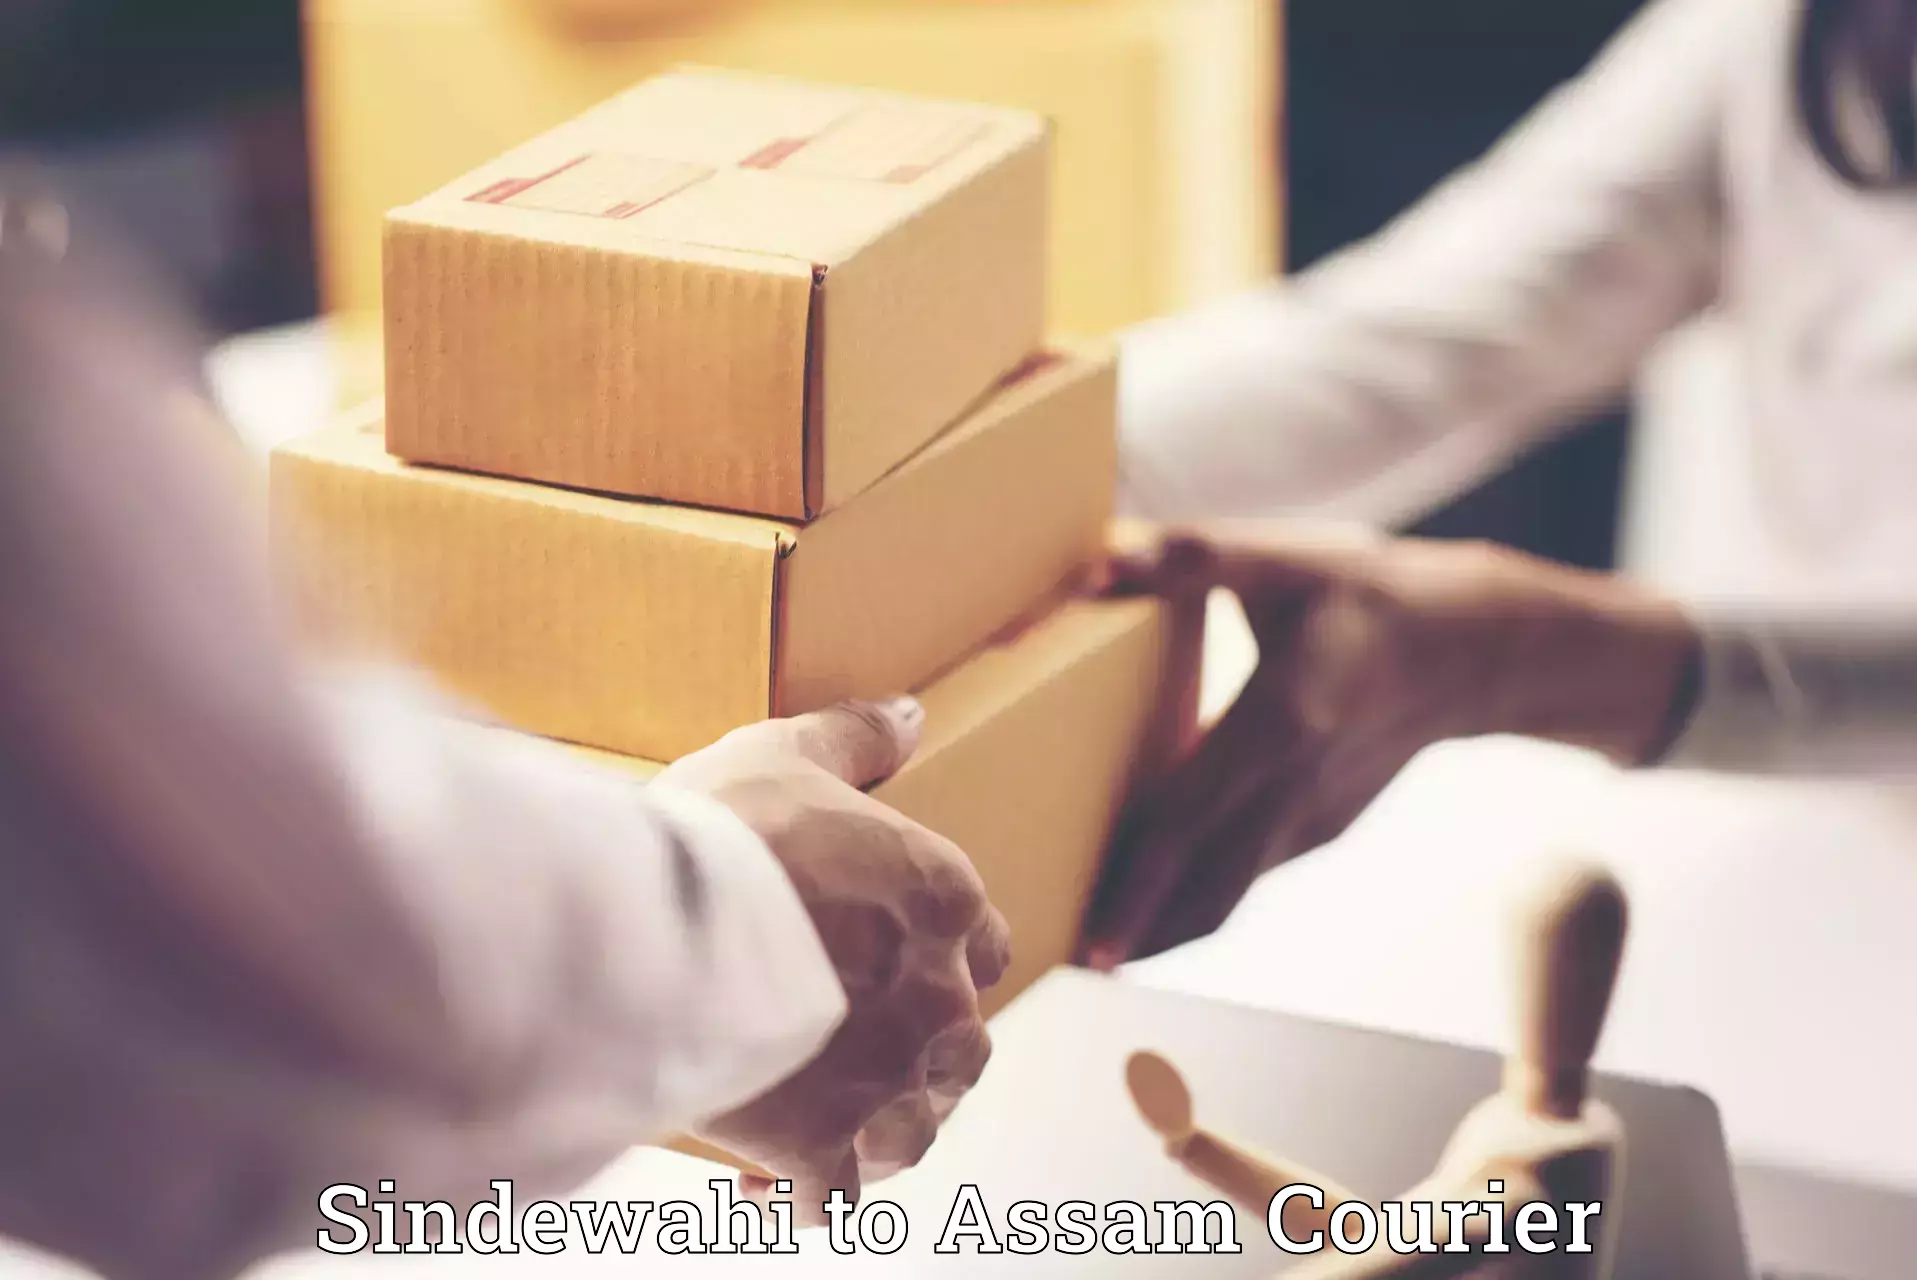 Customized luggage delivery Sindewahi to Lala Assam